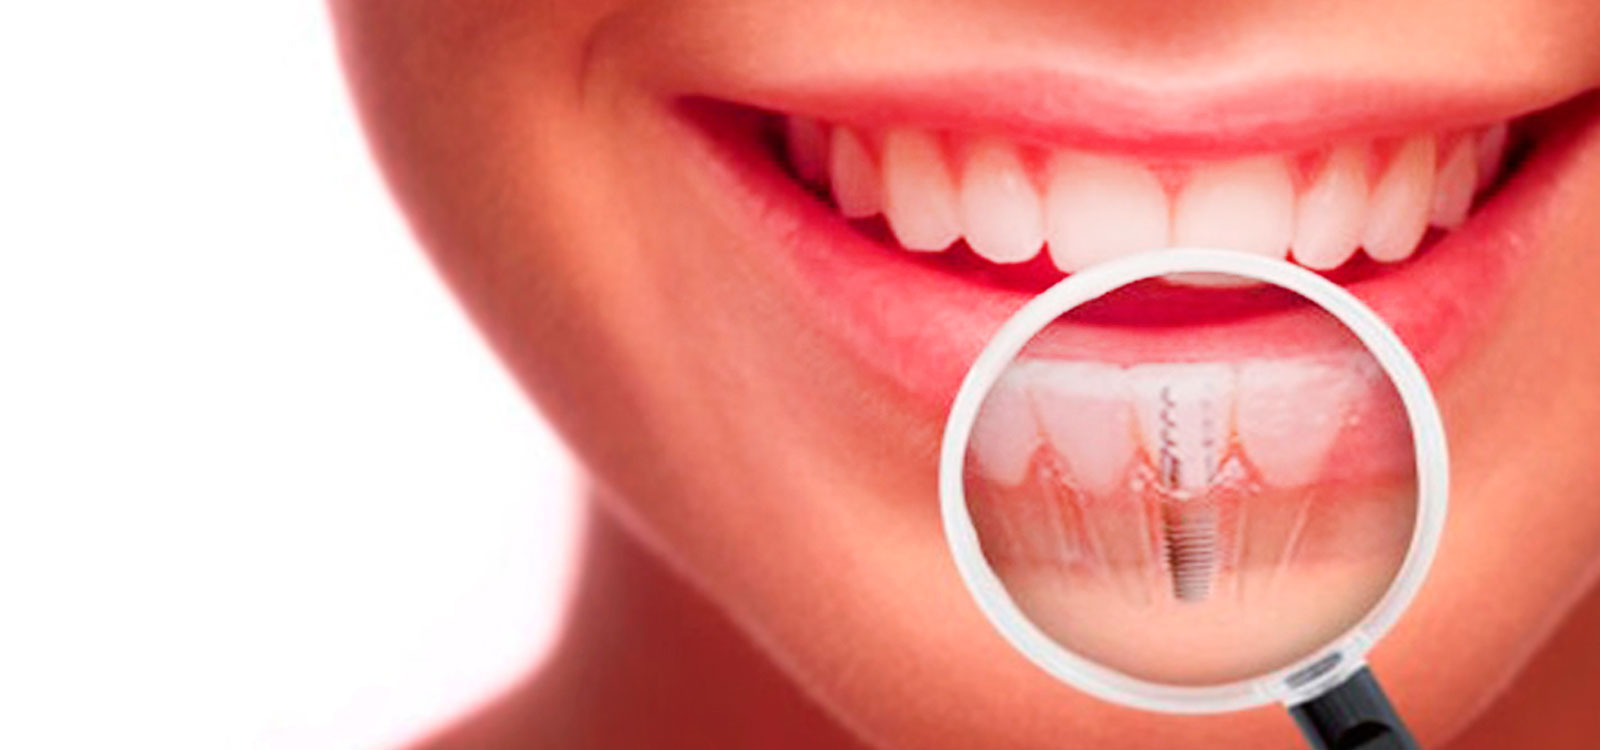 Resultado de imagen para implantes dentales